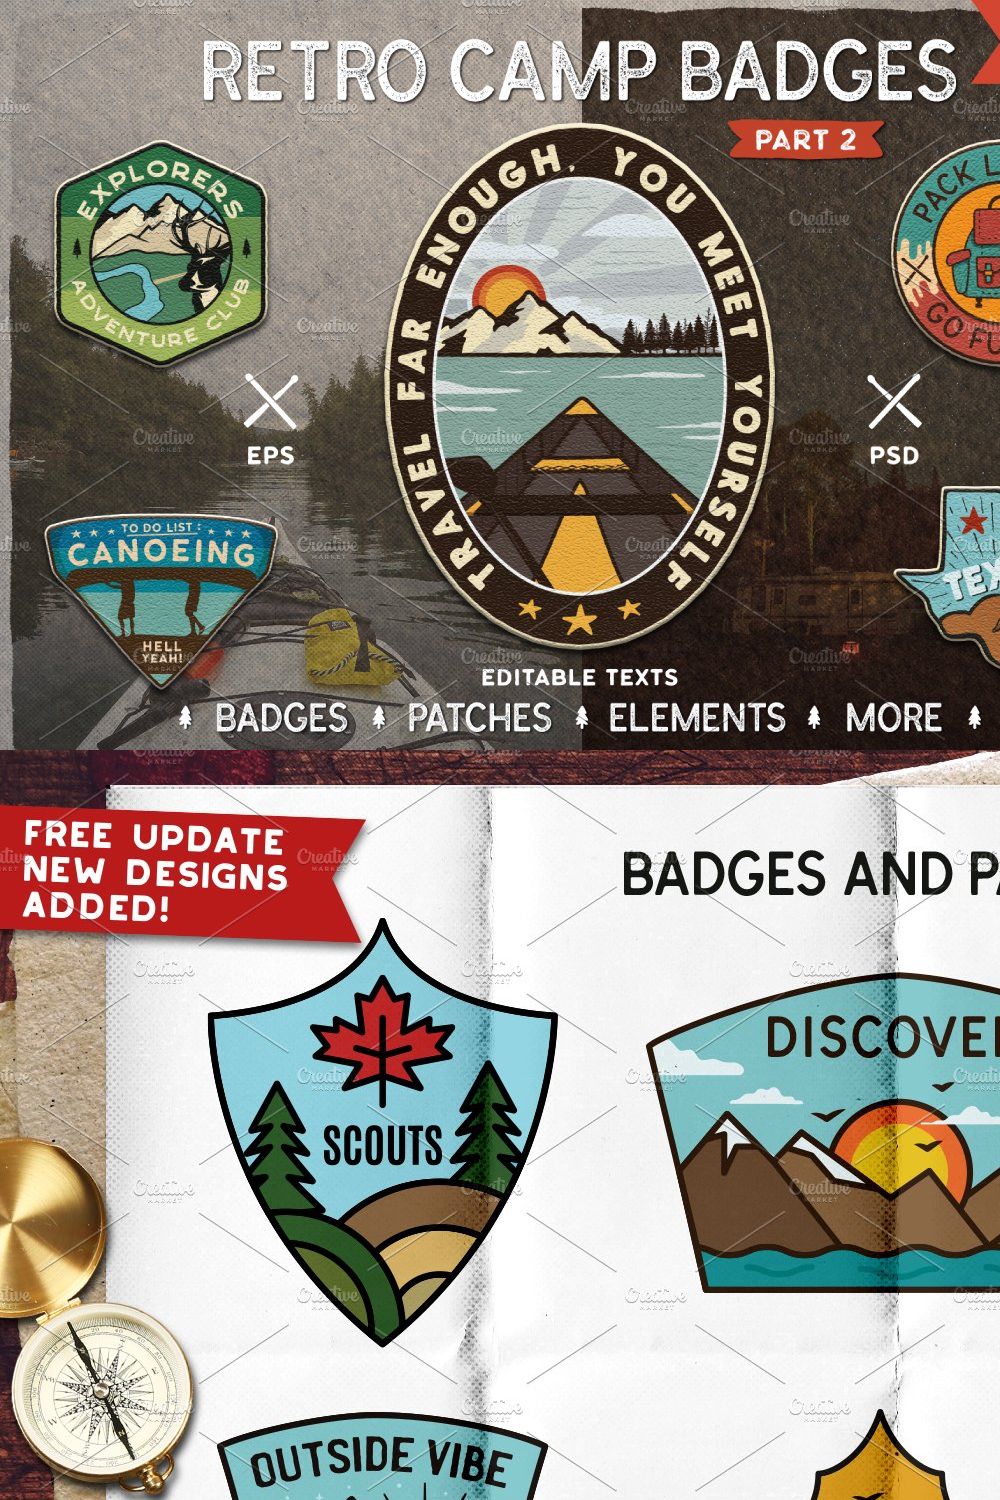 Retro Camp Adventure Badges. Part 2 pinterest preview image.